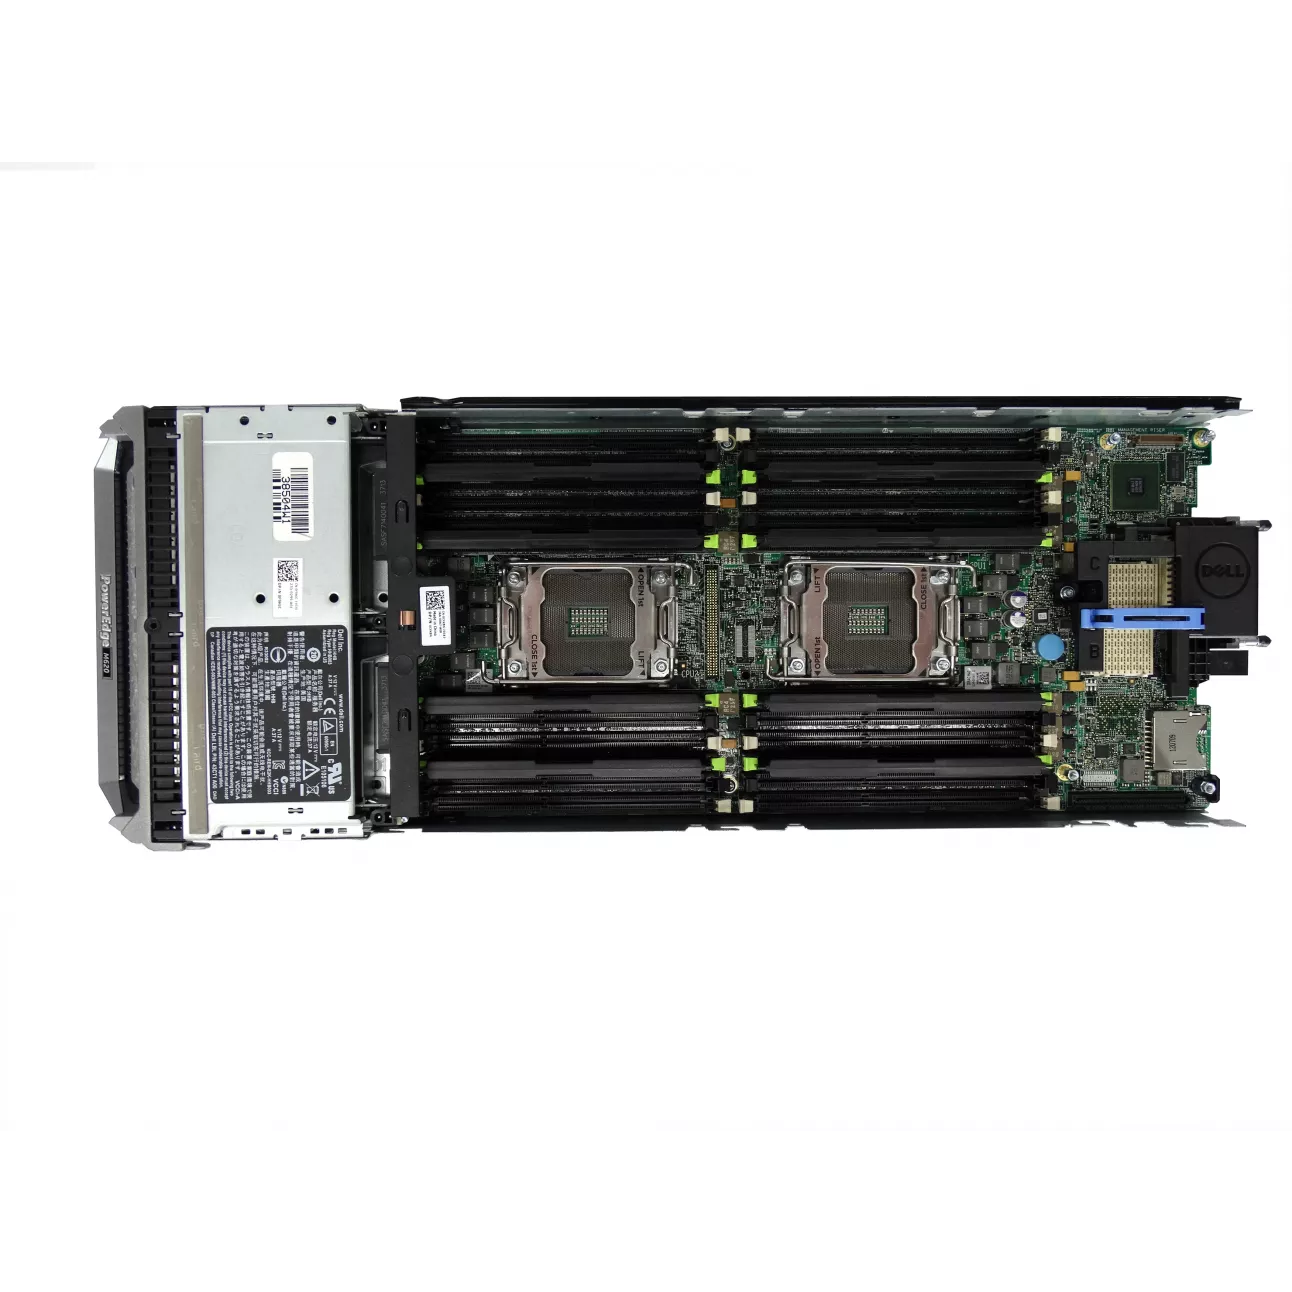 Блейд-сервер DELL PowerEdge M620, 2 процессора Intel 6C E5-2667 2.90GHz, 64GB DRAM, PERC H310, 2x10Gb 57810-k